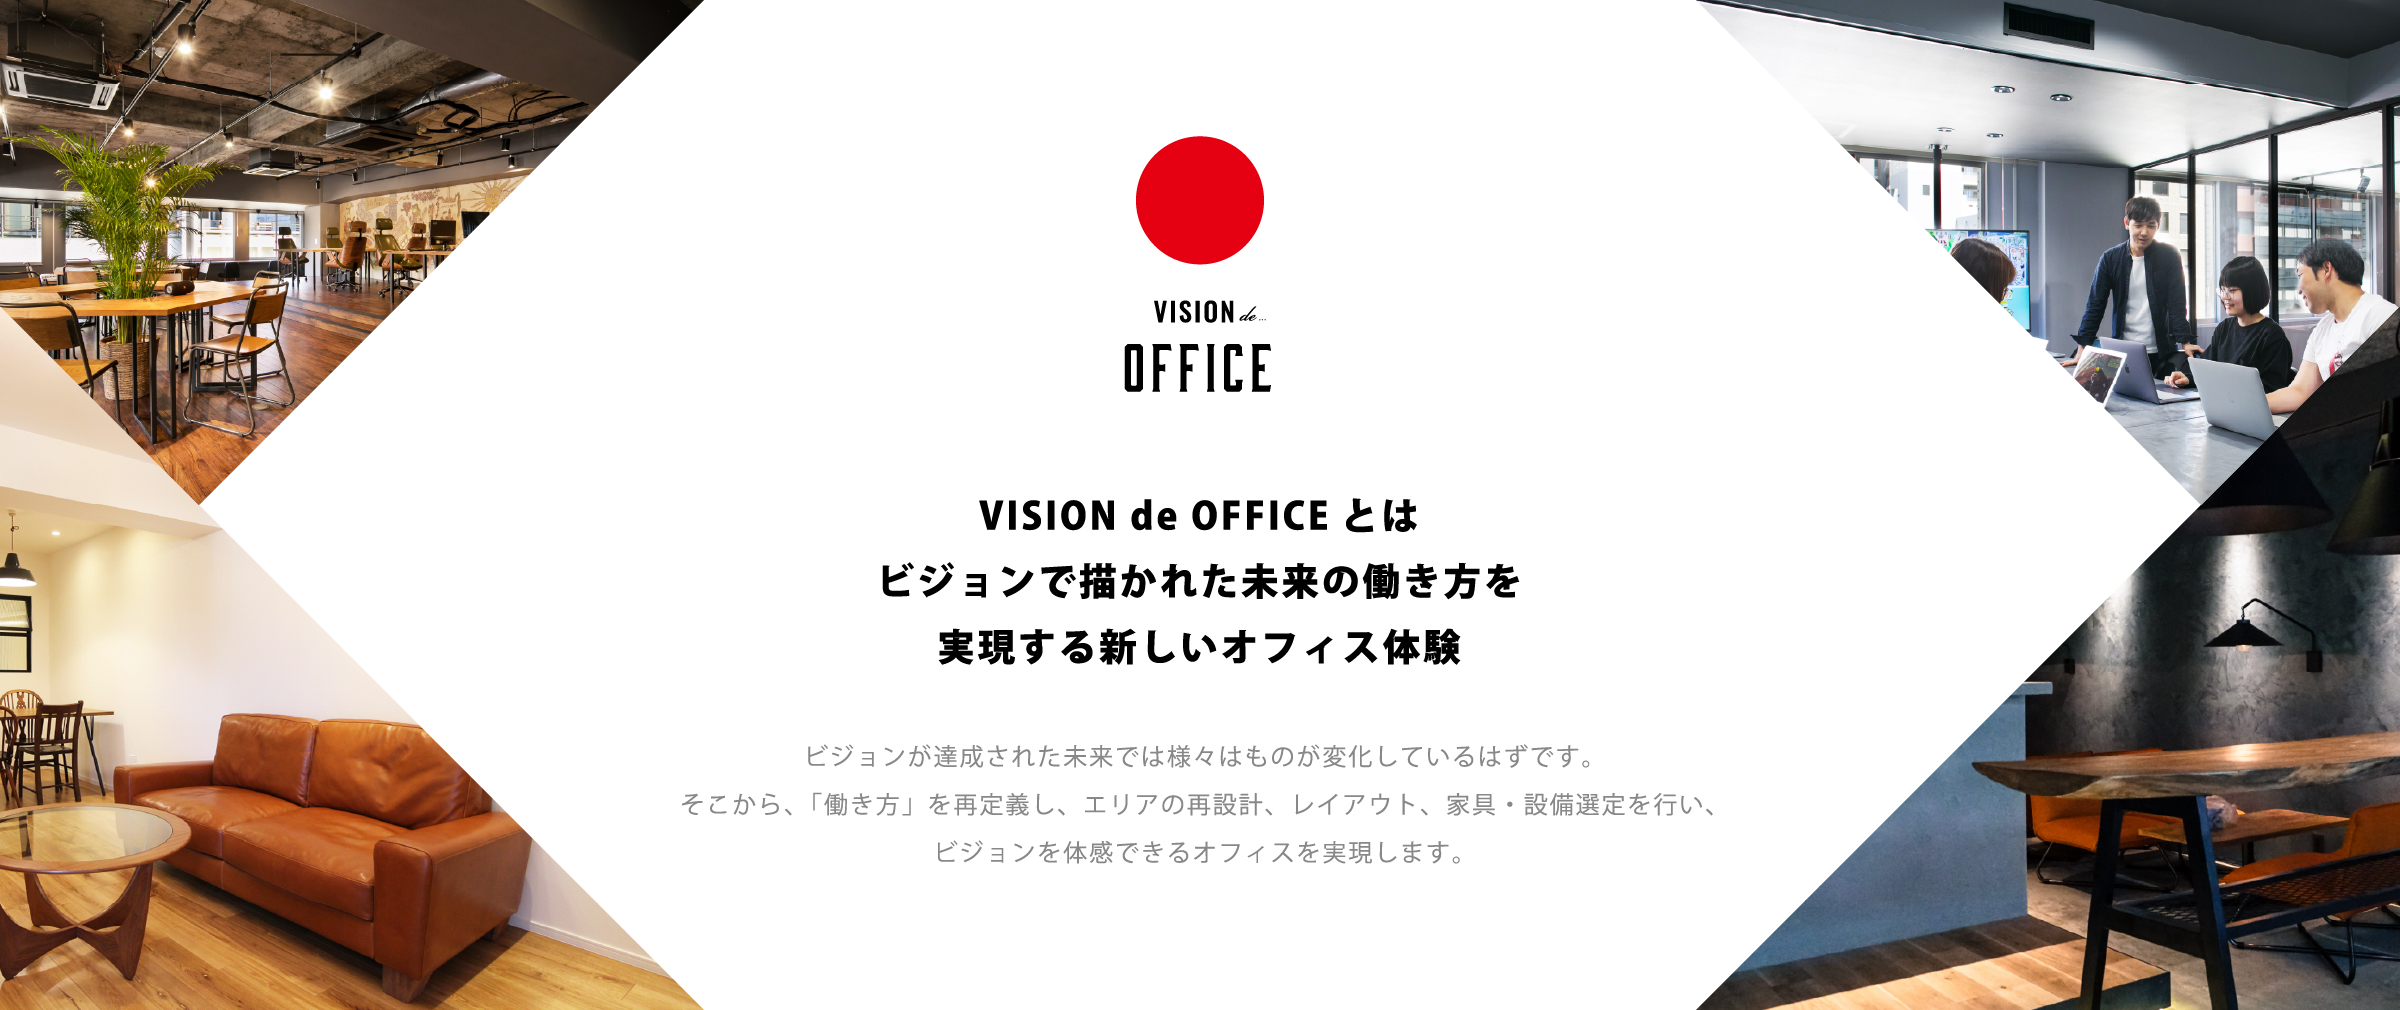 VISION de OFFICEとはビジョンで描かれた未来の働き方を実現する新しいオフィス体験